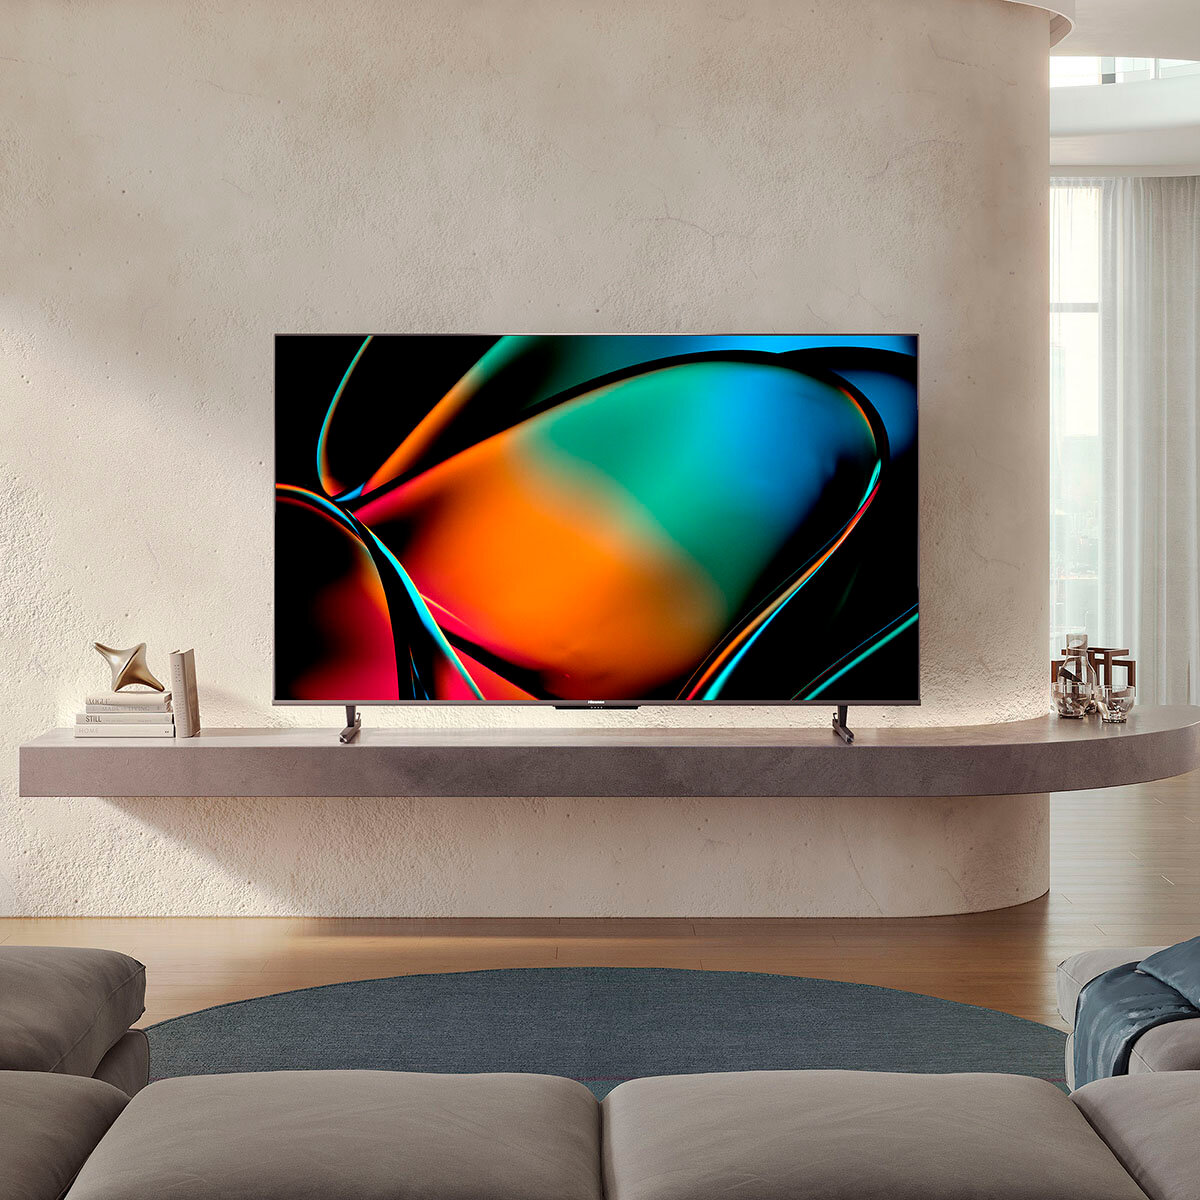 Hisense Pantalla 65" Mini-LED 4K Smart TV